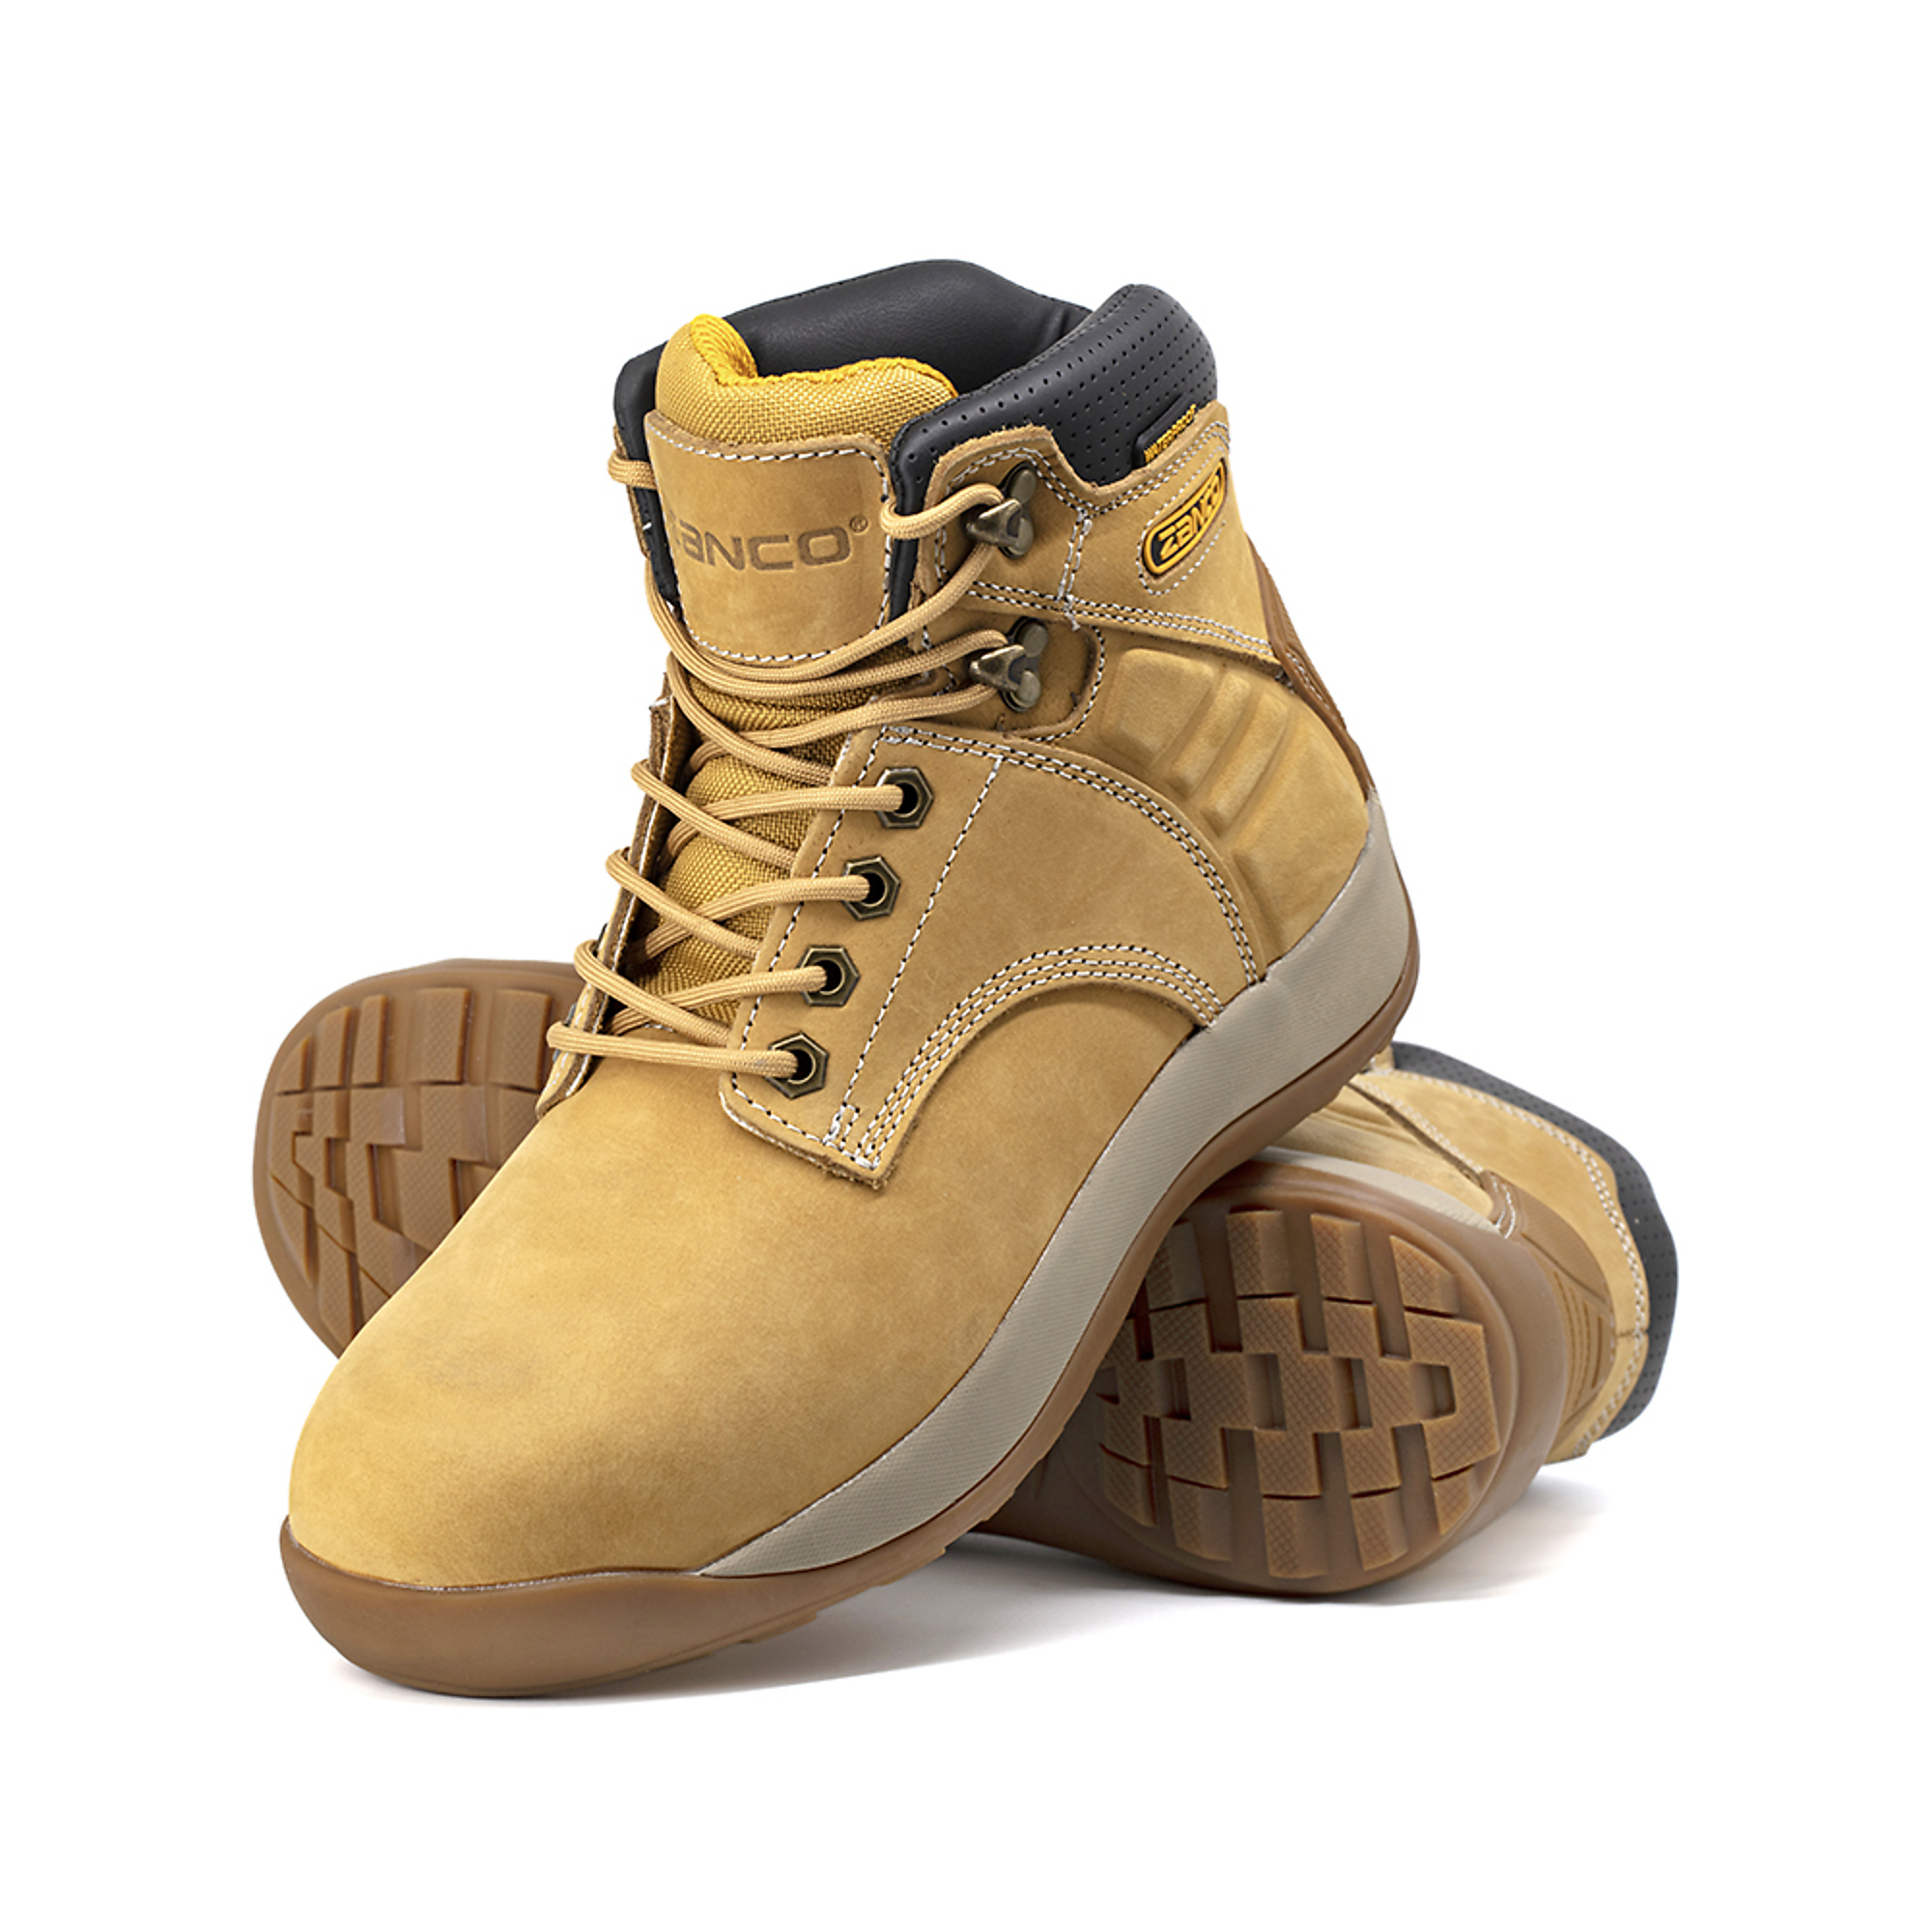 Zanco, Men's Waterproof,Steel toe,EH,Safety boots, Size 7, Width Medium, Color WHEAT, Model 8236-16-7